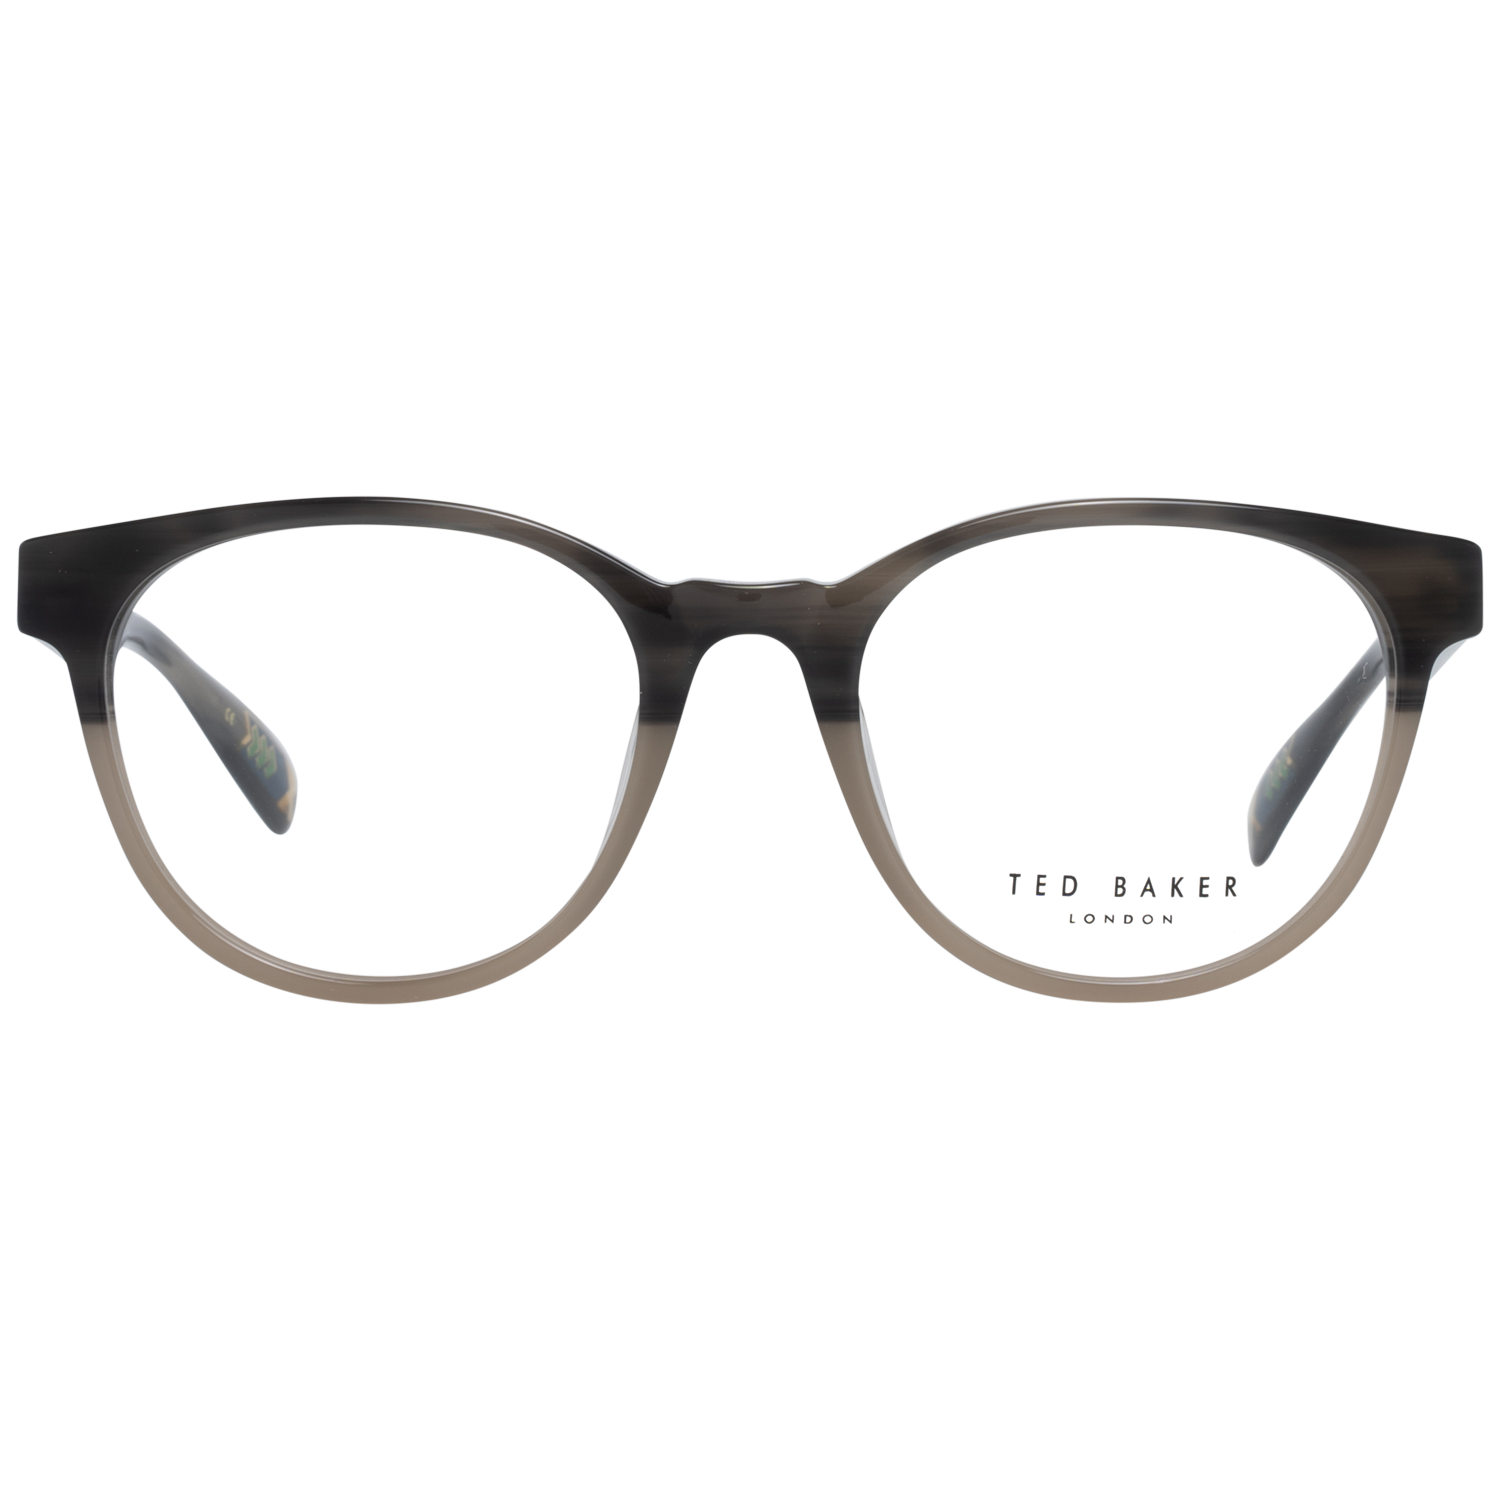 Ted Baker Frames Ted Baker Optical Frame Prescription Glasses TB8197 960 51 Cade Eyeglasses Eyewear UK USA Australia 